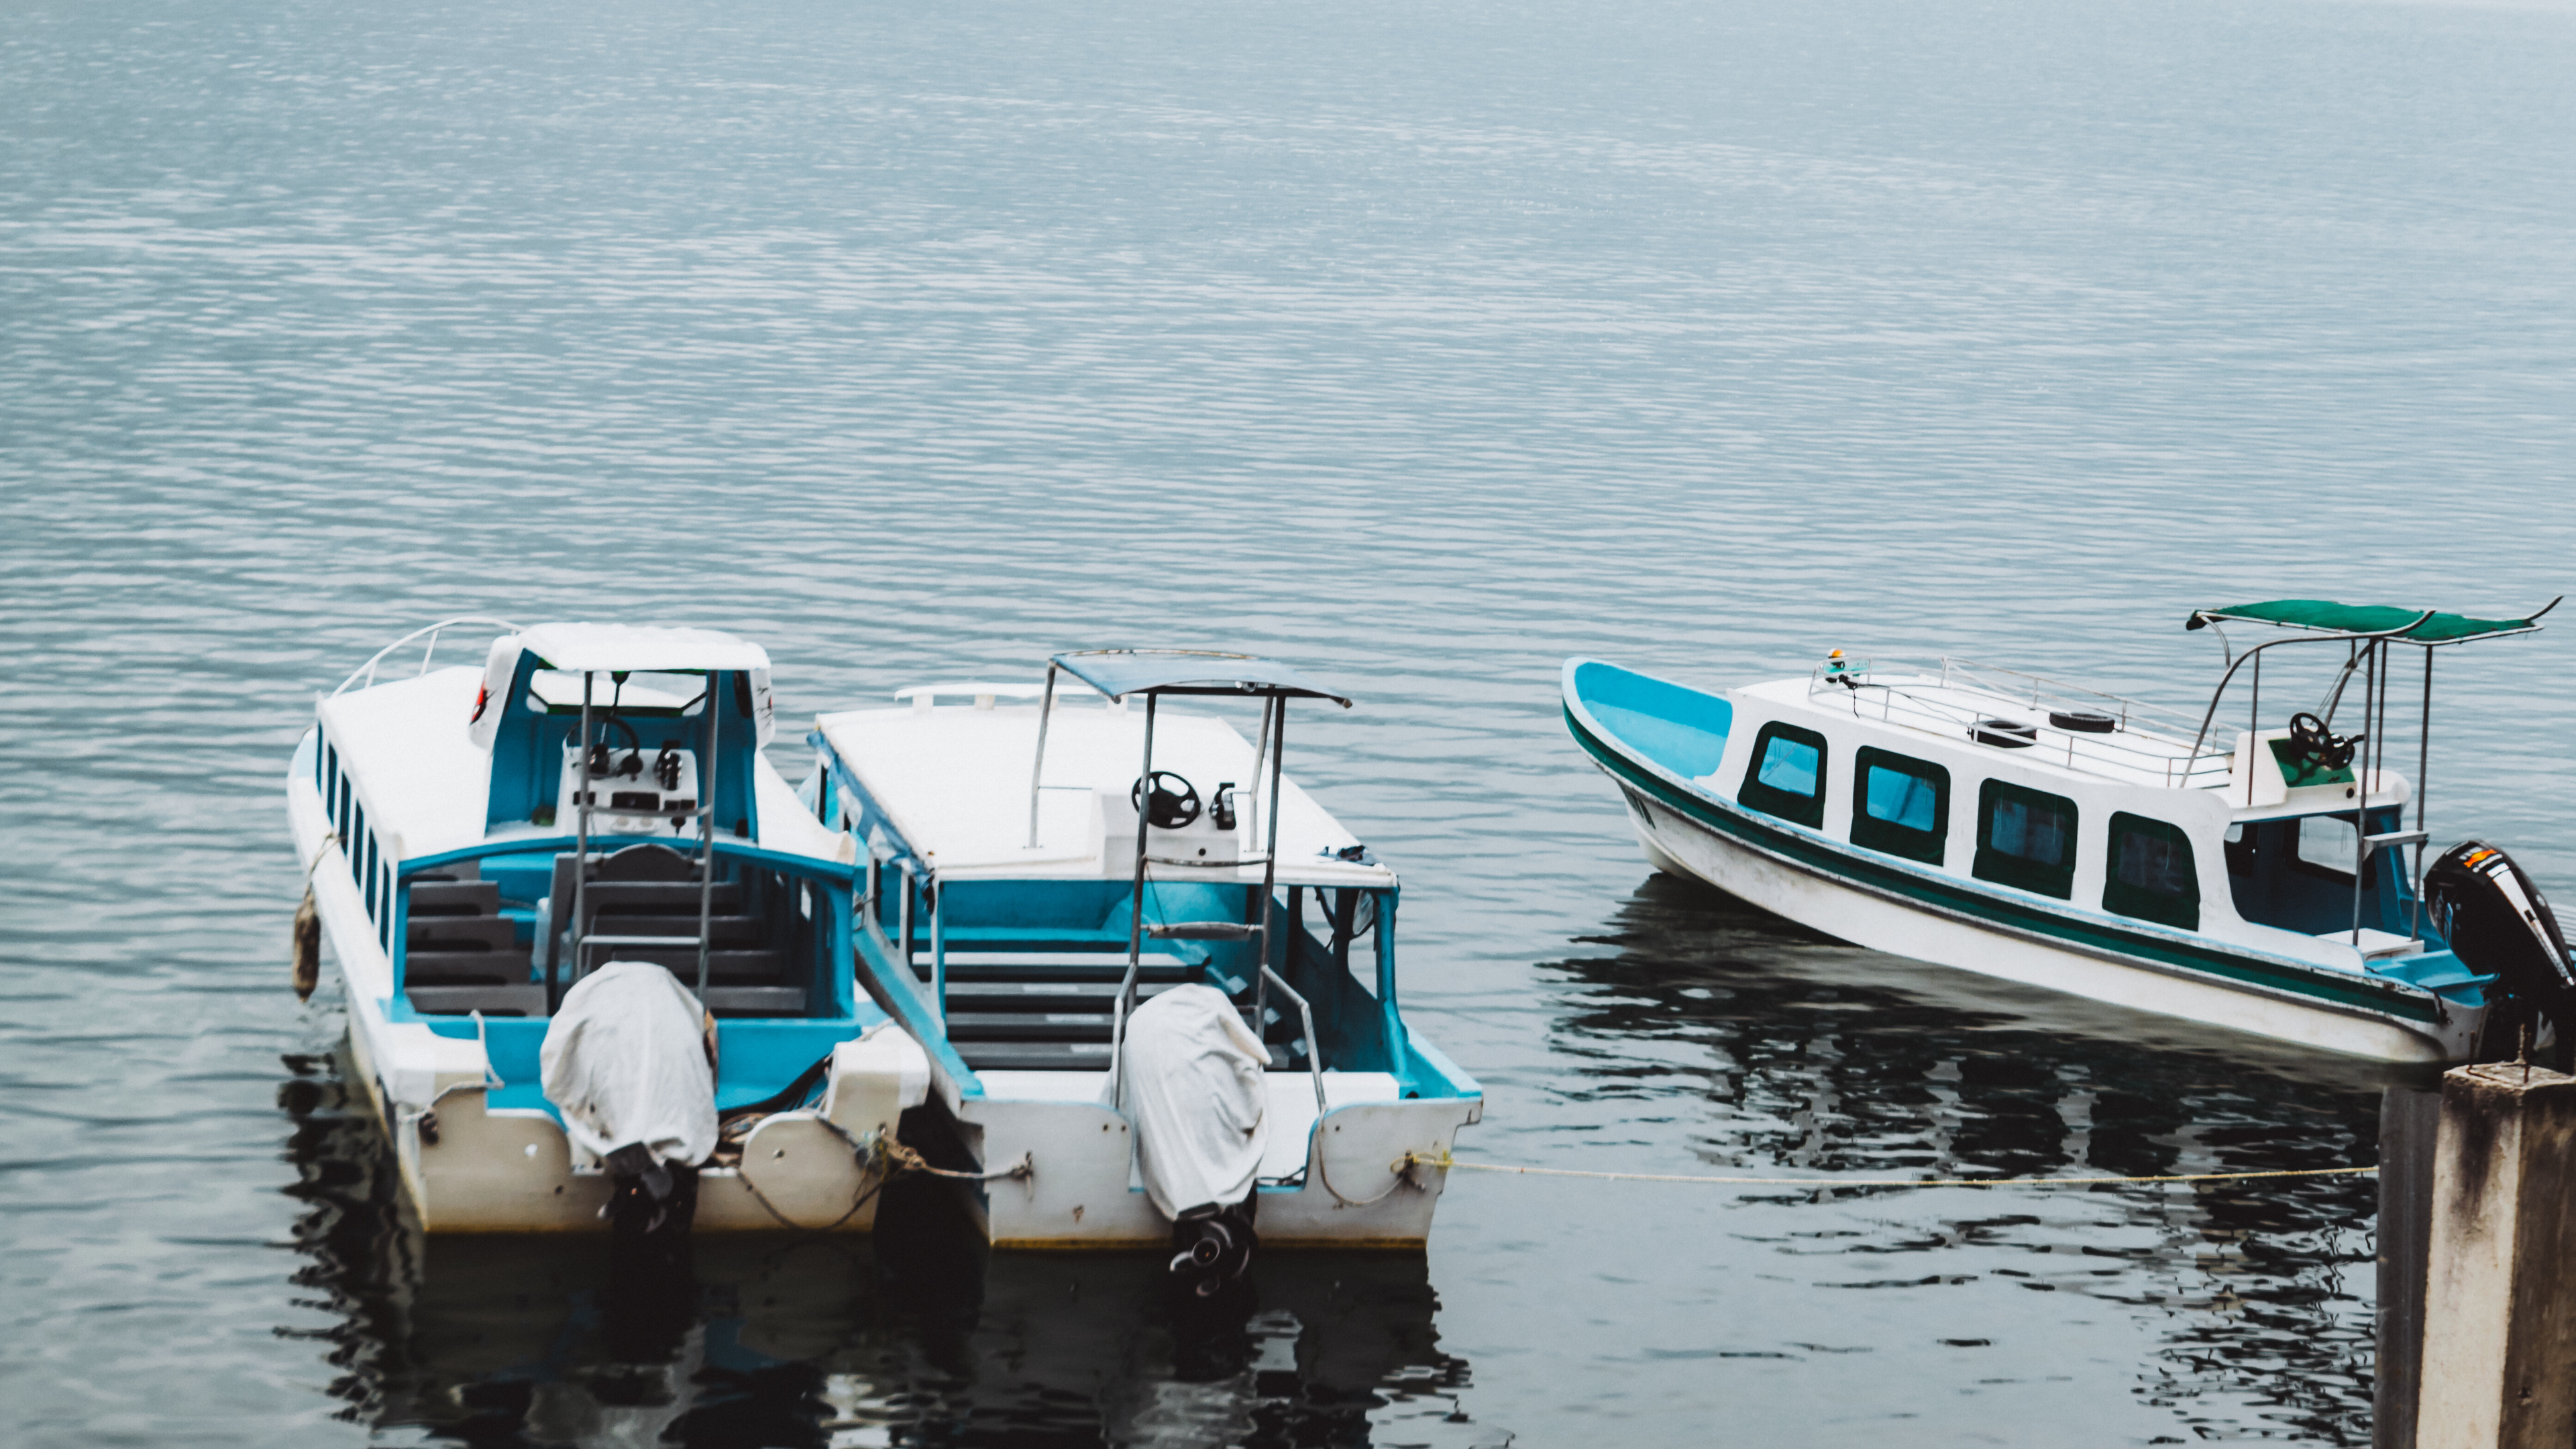 utah boat rentals at bear lake including pontoon boats, ski boats, sea kayaks at the seven boat ramps